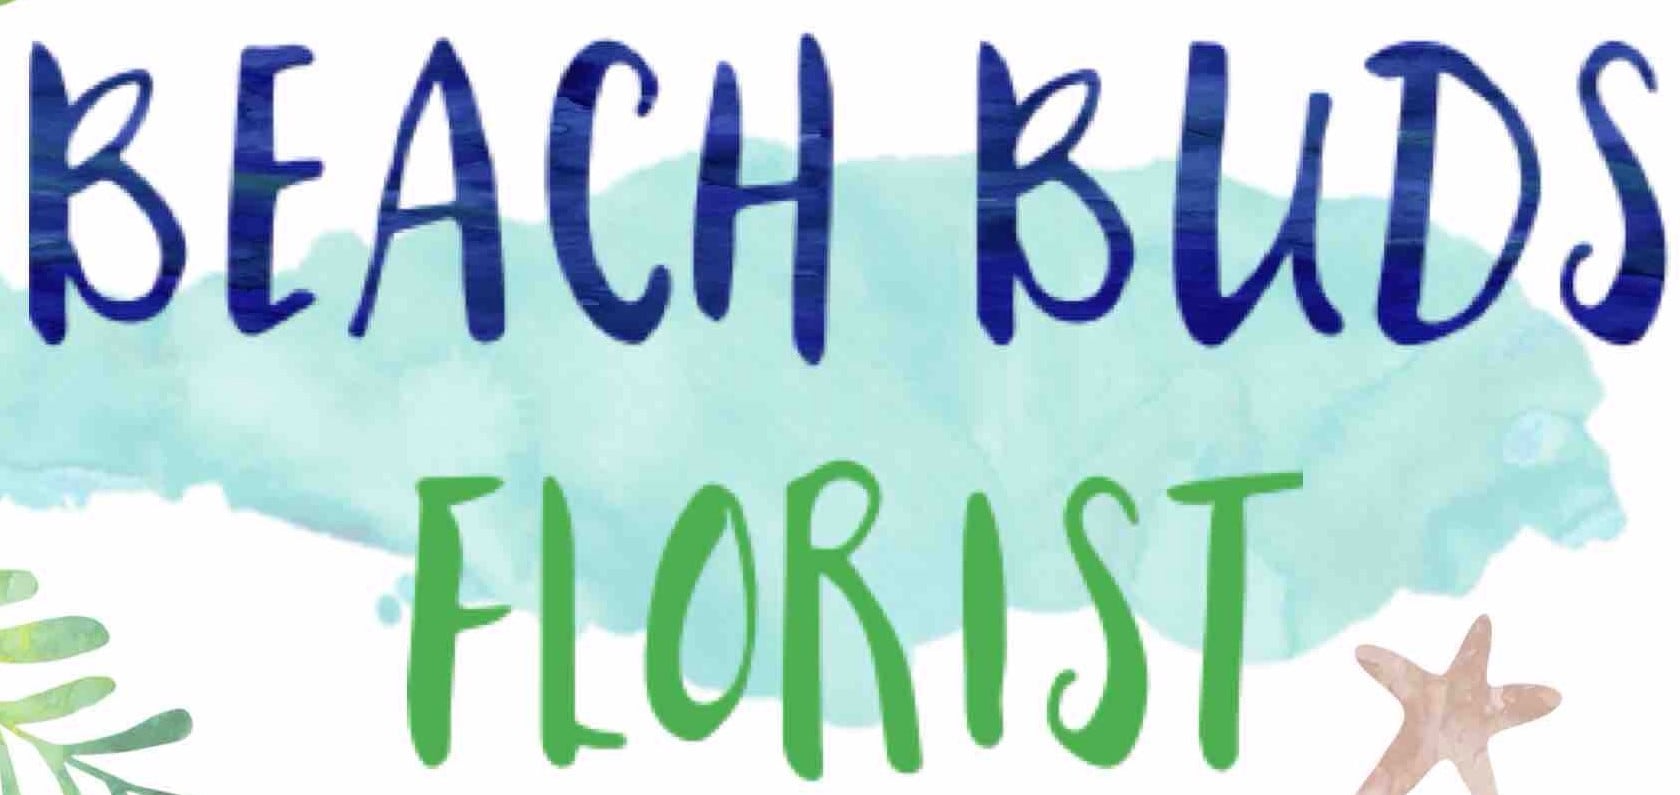 Beach Buds Florist - Logo